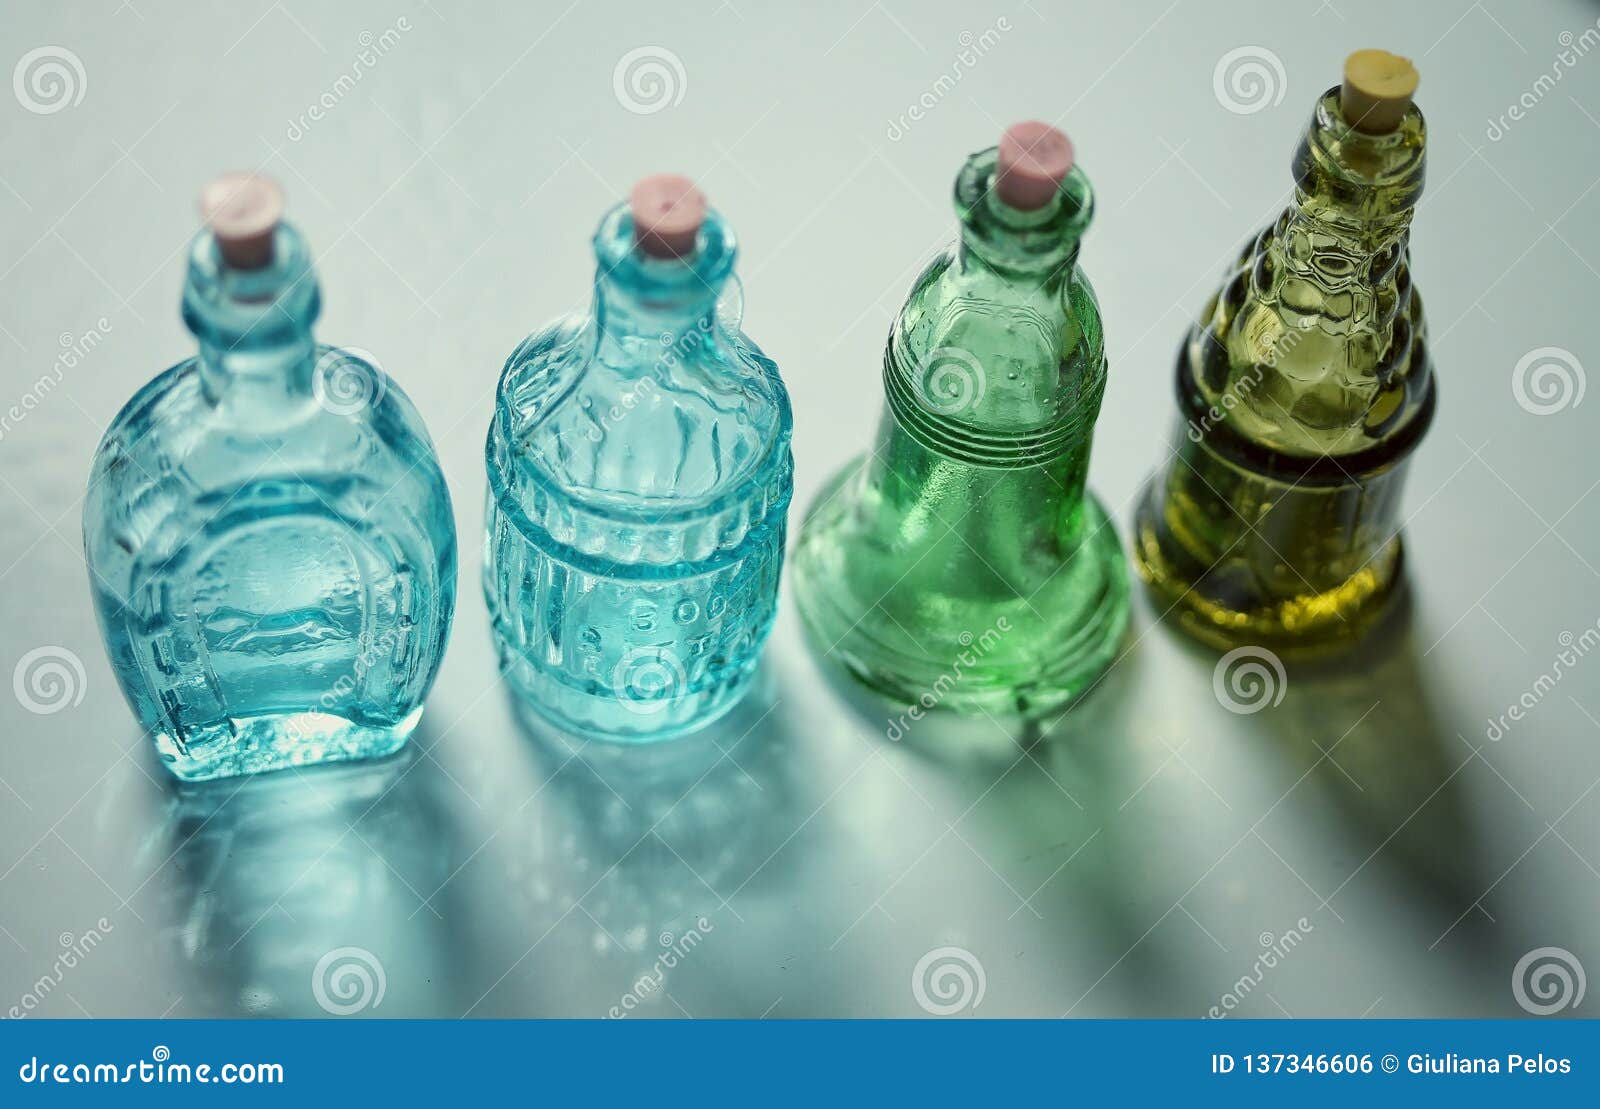 glass colourful bottles - still life